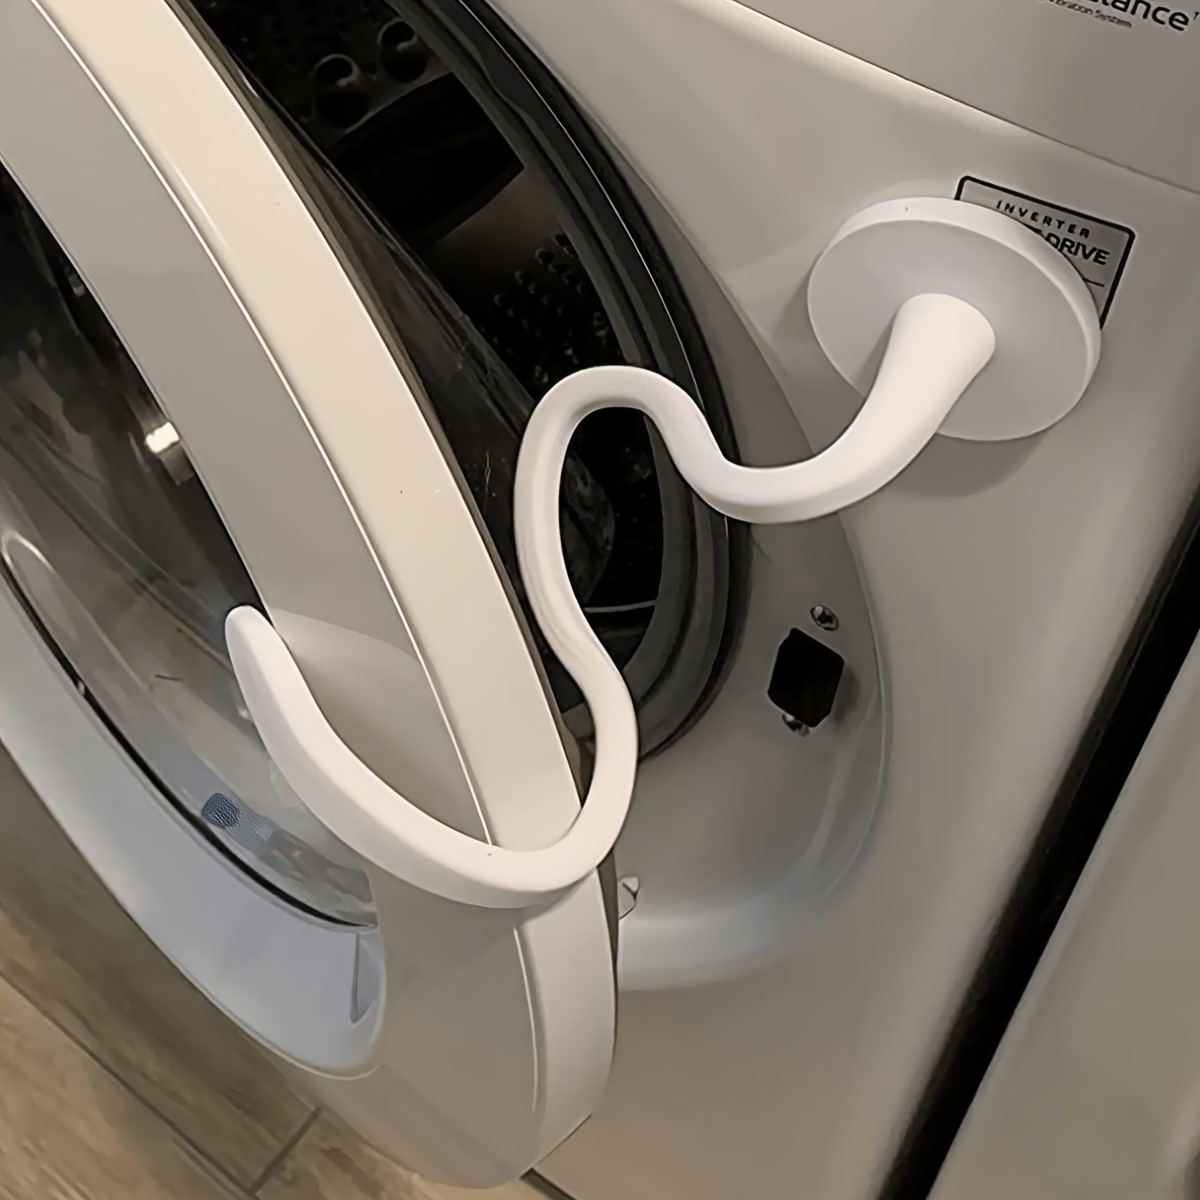  Base de soporte para lavadora, ajustable, resistente,  extensible, ruedas de carro para electrodomésticos, carrito multifuncional  para muebles, para refrigeradores, lavadoras, secadoras, lavavajillas  (color negro) : Electrodomésticos